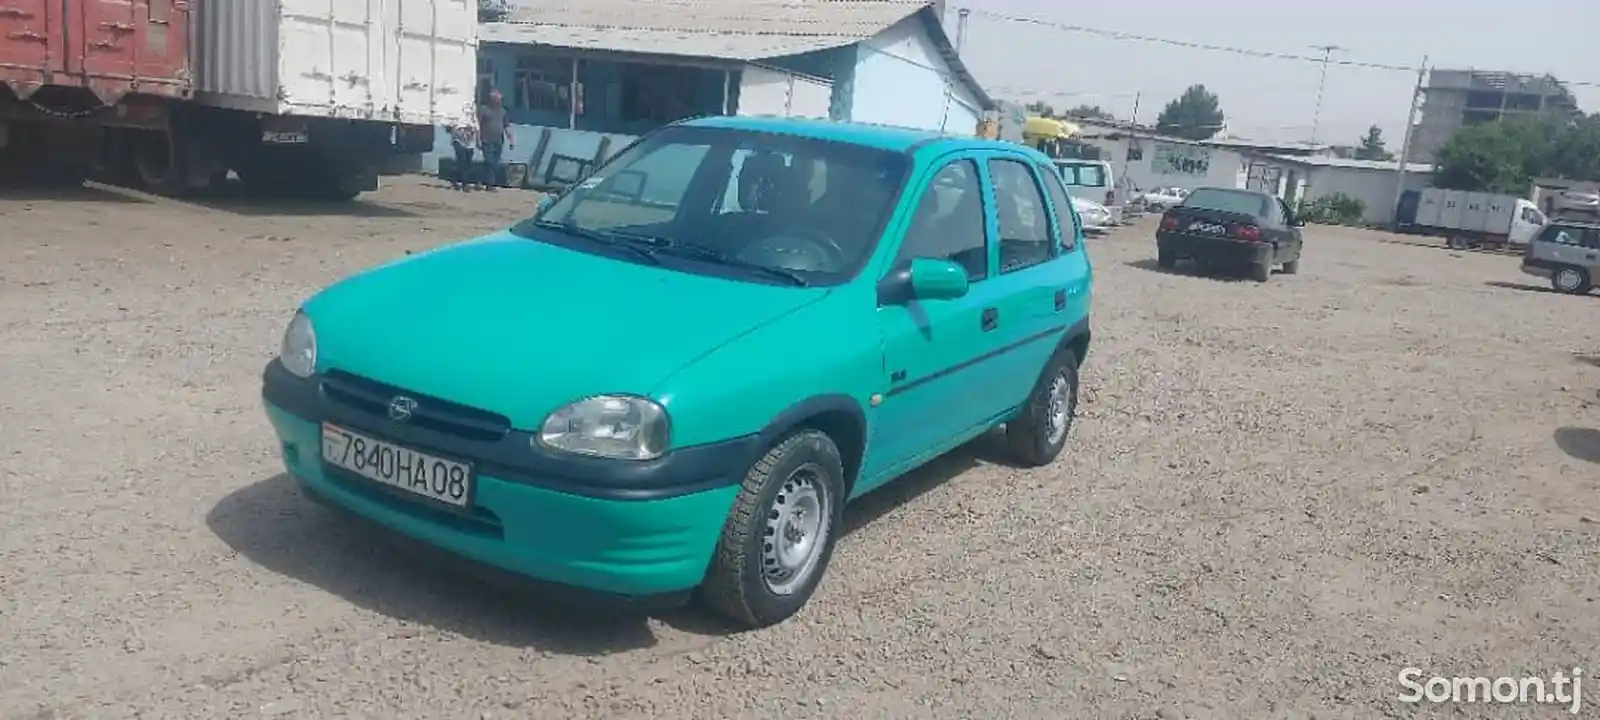 Opel Vita, 1997-2